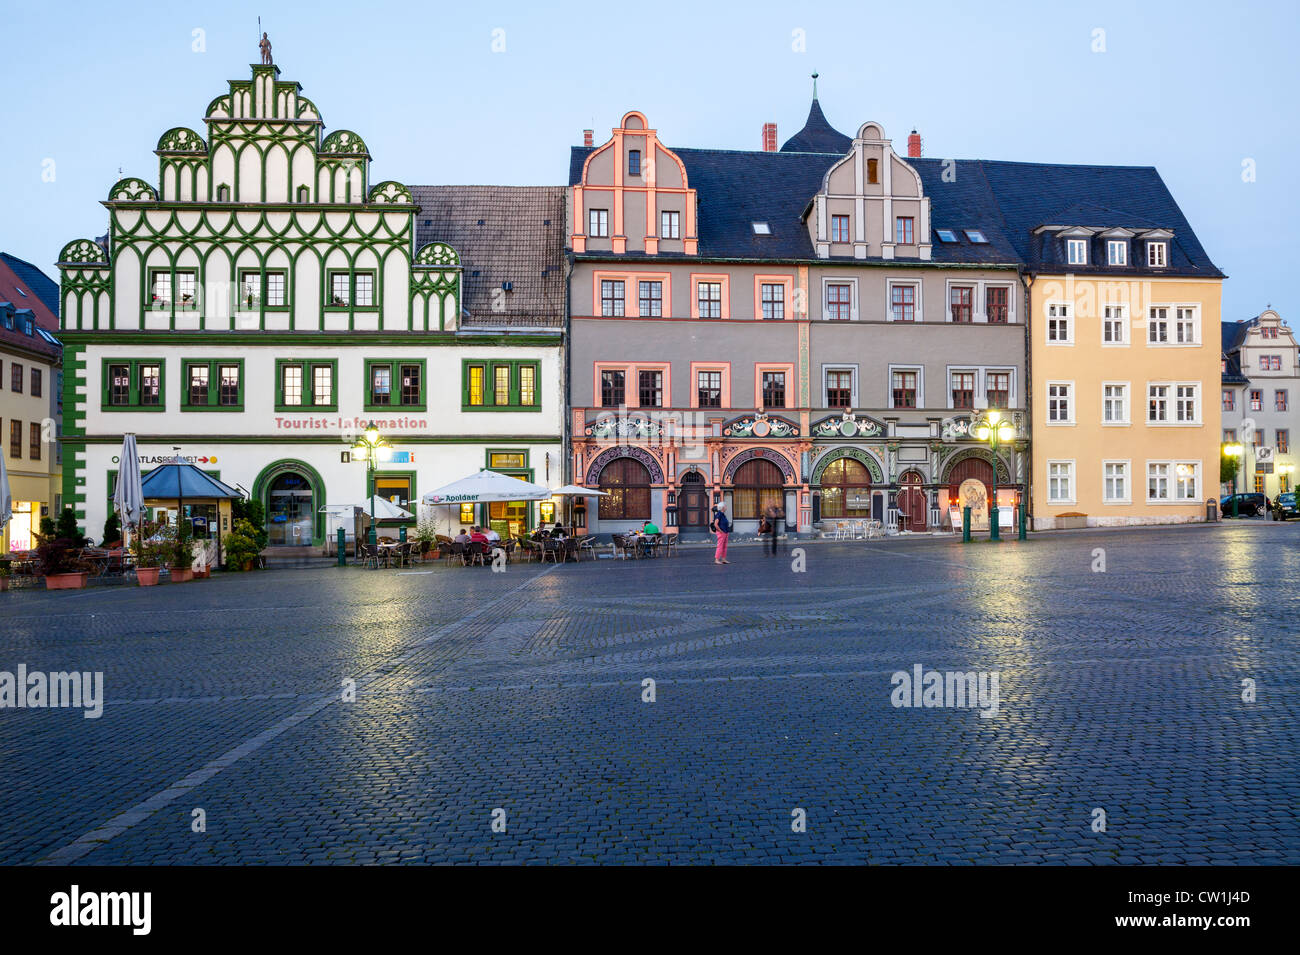 Marktplatz, Weimar, Thuringe, Allemagne Banque D'Images